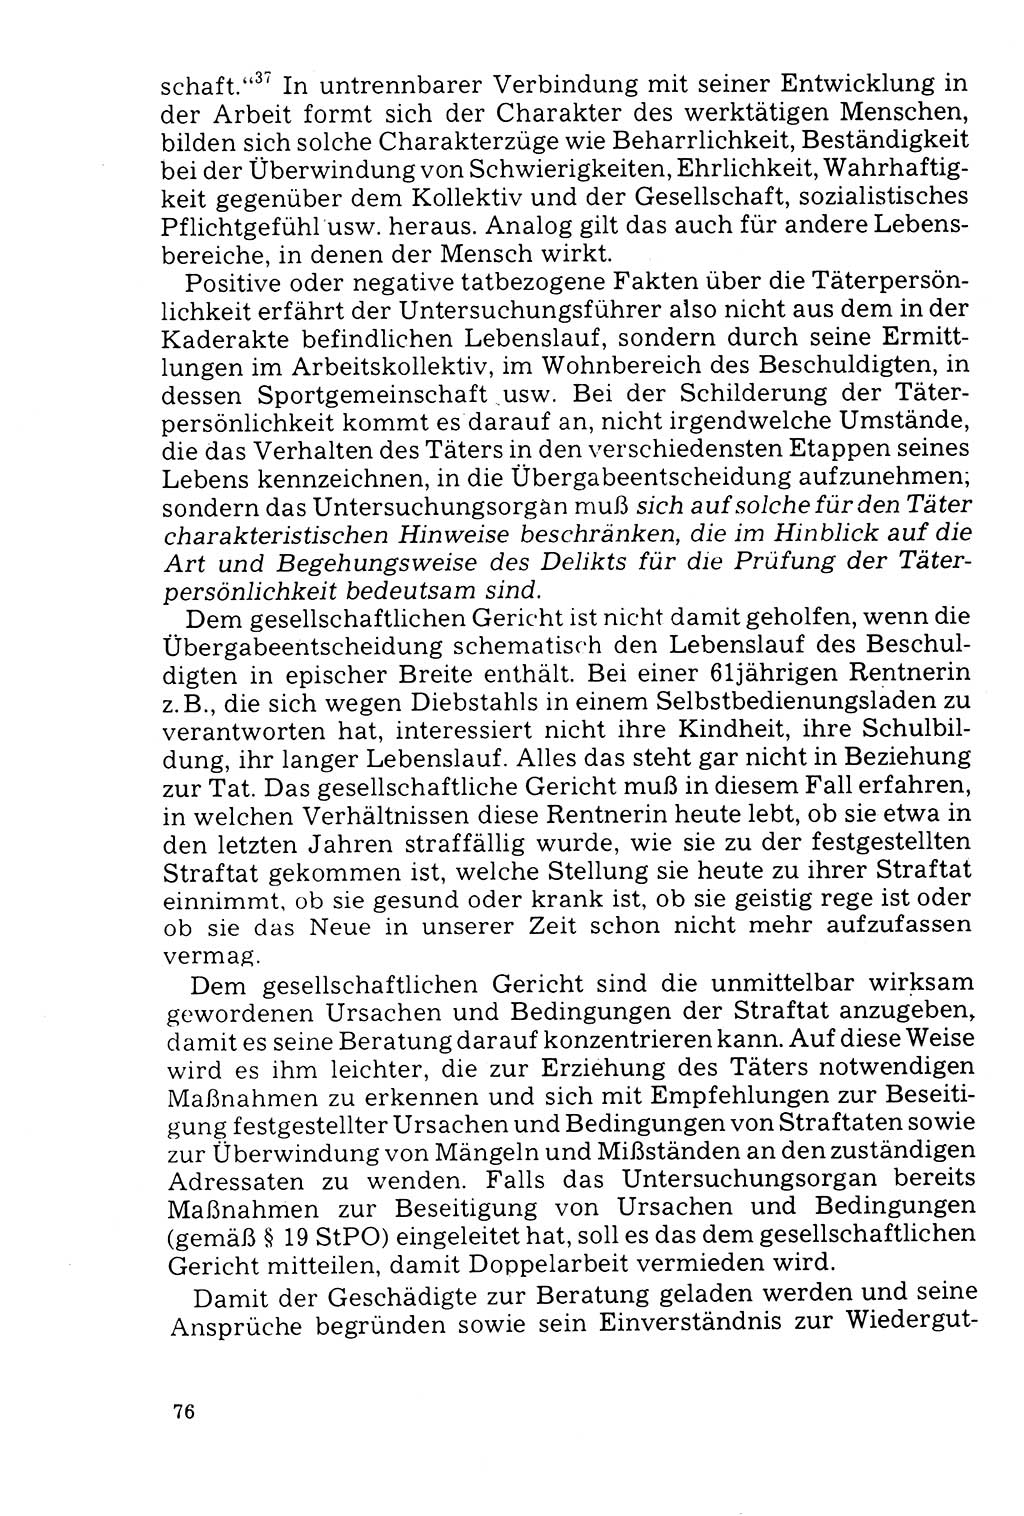 Der Abschluß des Ermittlungsverfahrens [Deutsche Demokratische Republik (DDR)] 1978, Seite 76 (Abschl. EV DDR 1978, S. 76)